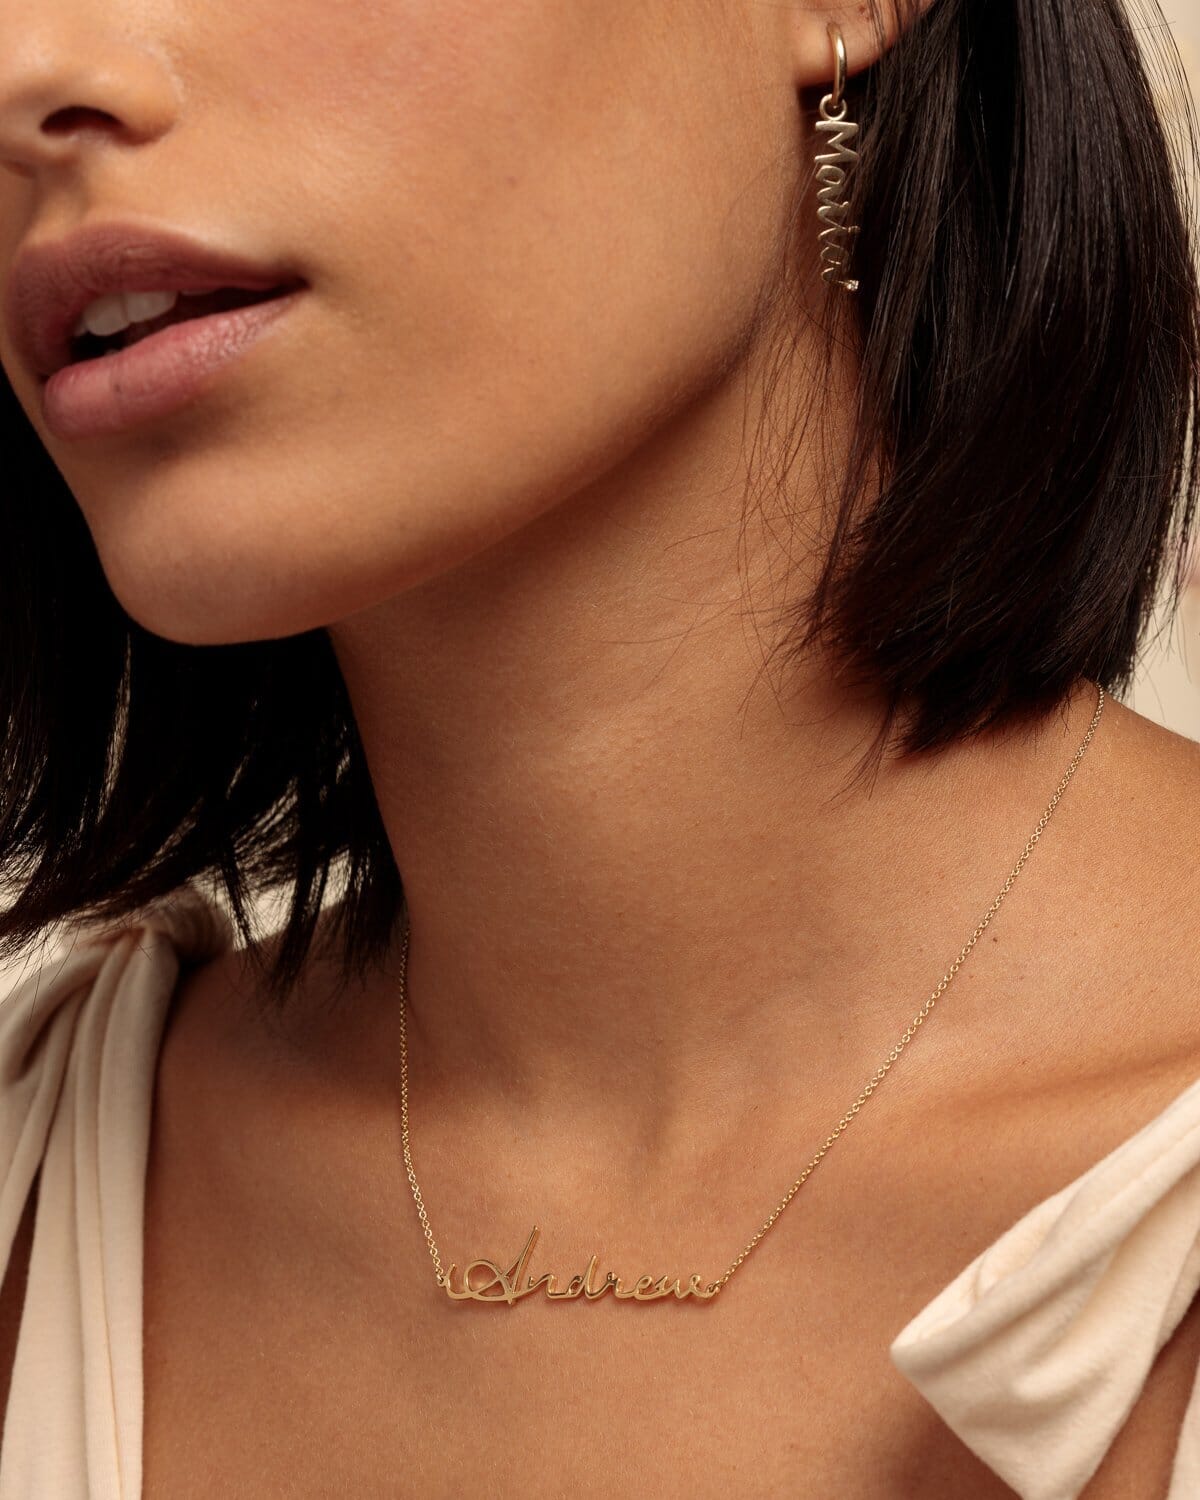 Malibu Name Necklace - 18K Rose Vermeil Necklaces magal-dev 